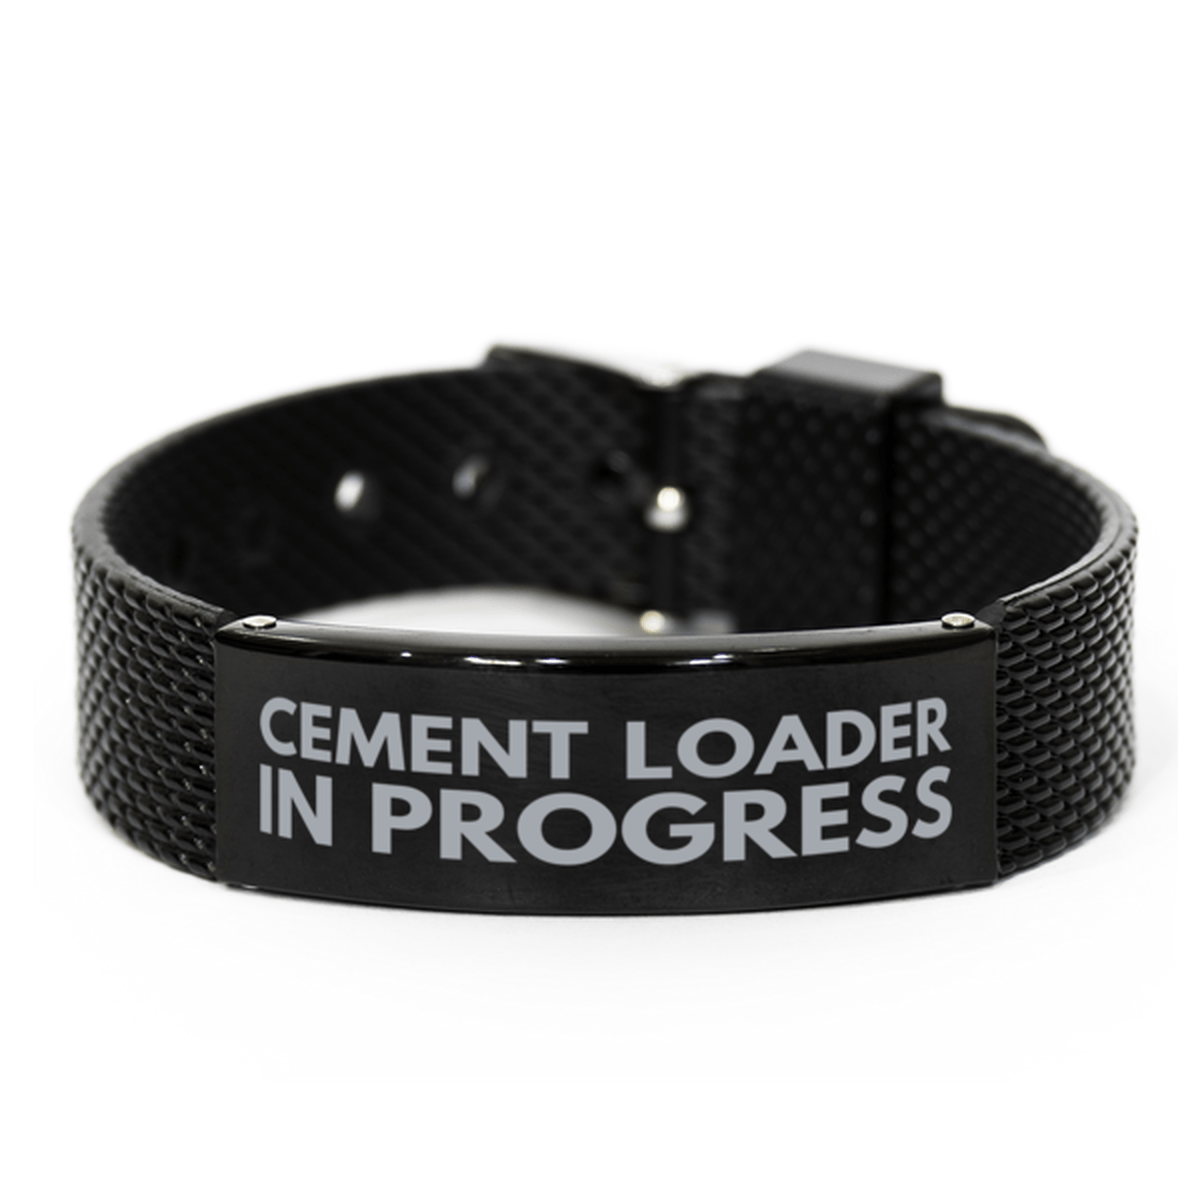 Inspirational Cement Loader Black Shark Mesh Bracelet, Cement Loader In Progress, Best Graduation Gifts for Students